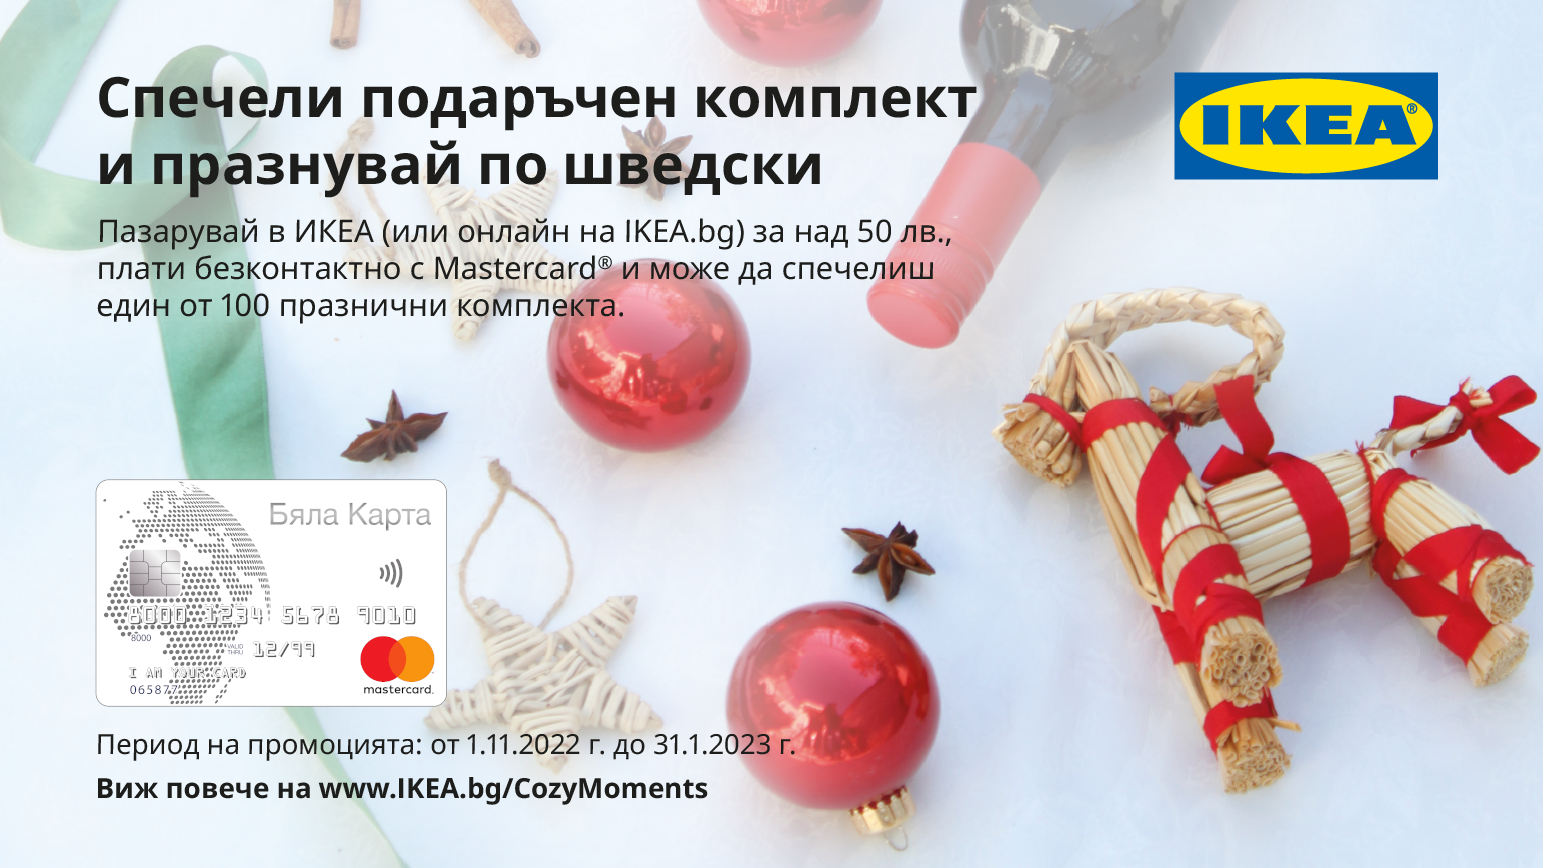 Пазарувай в IKEA с твоята Бяла Карта Mastercard и може да спечелиш награди!